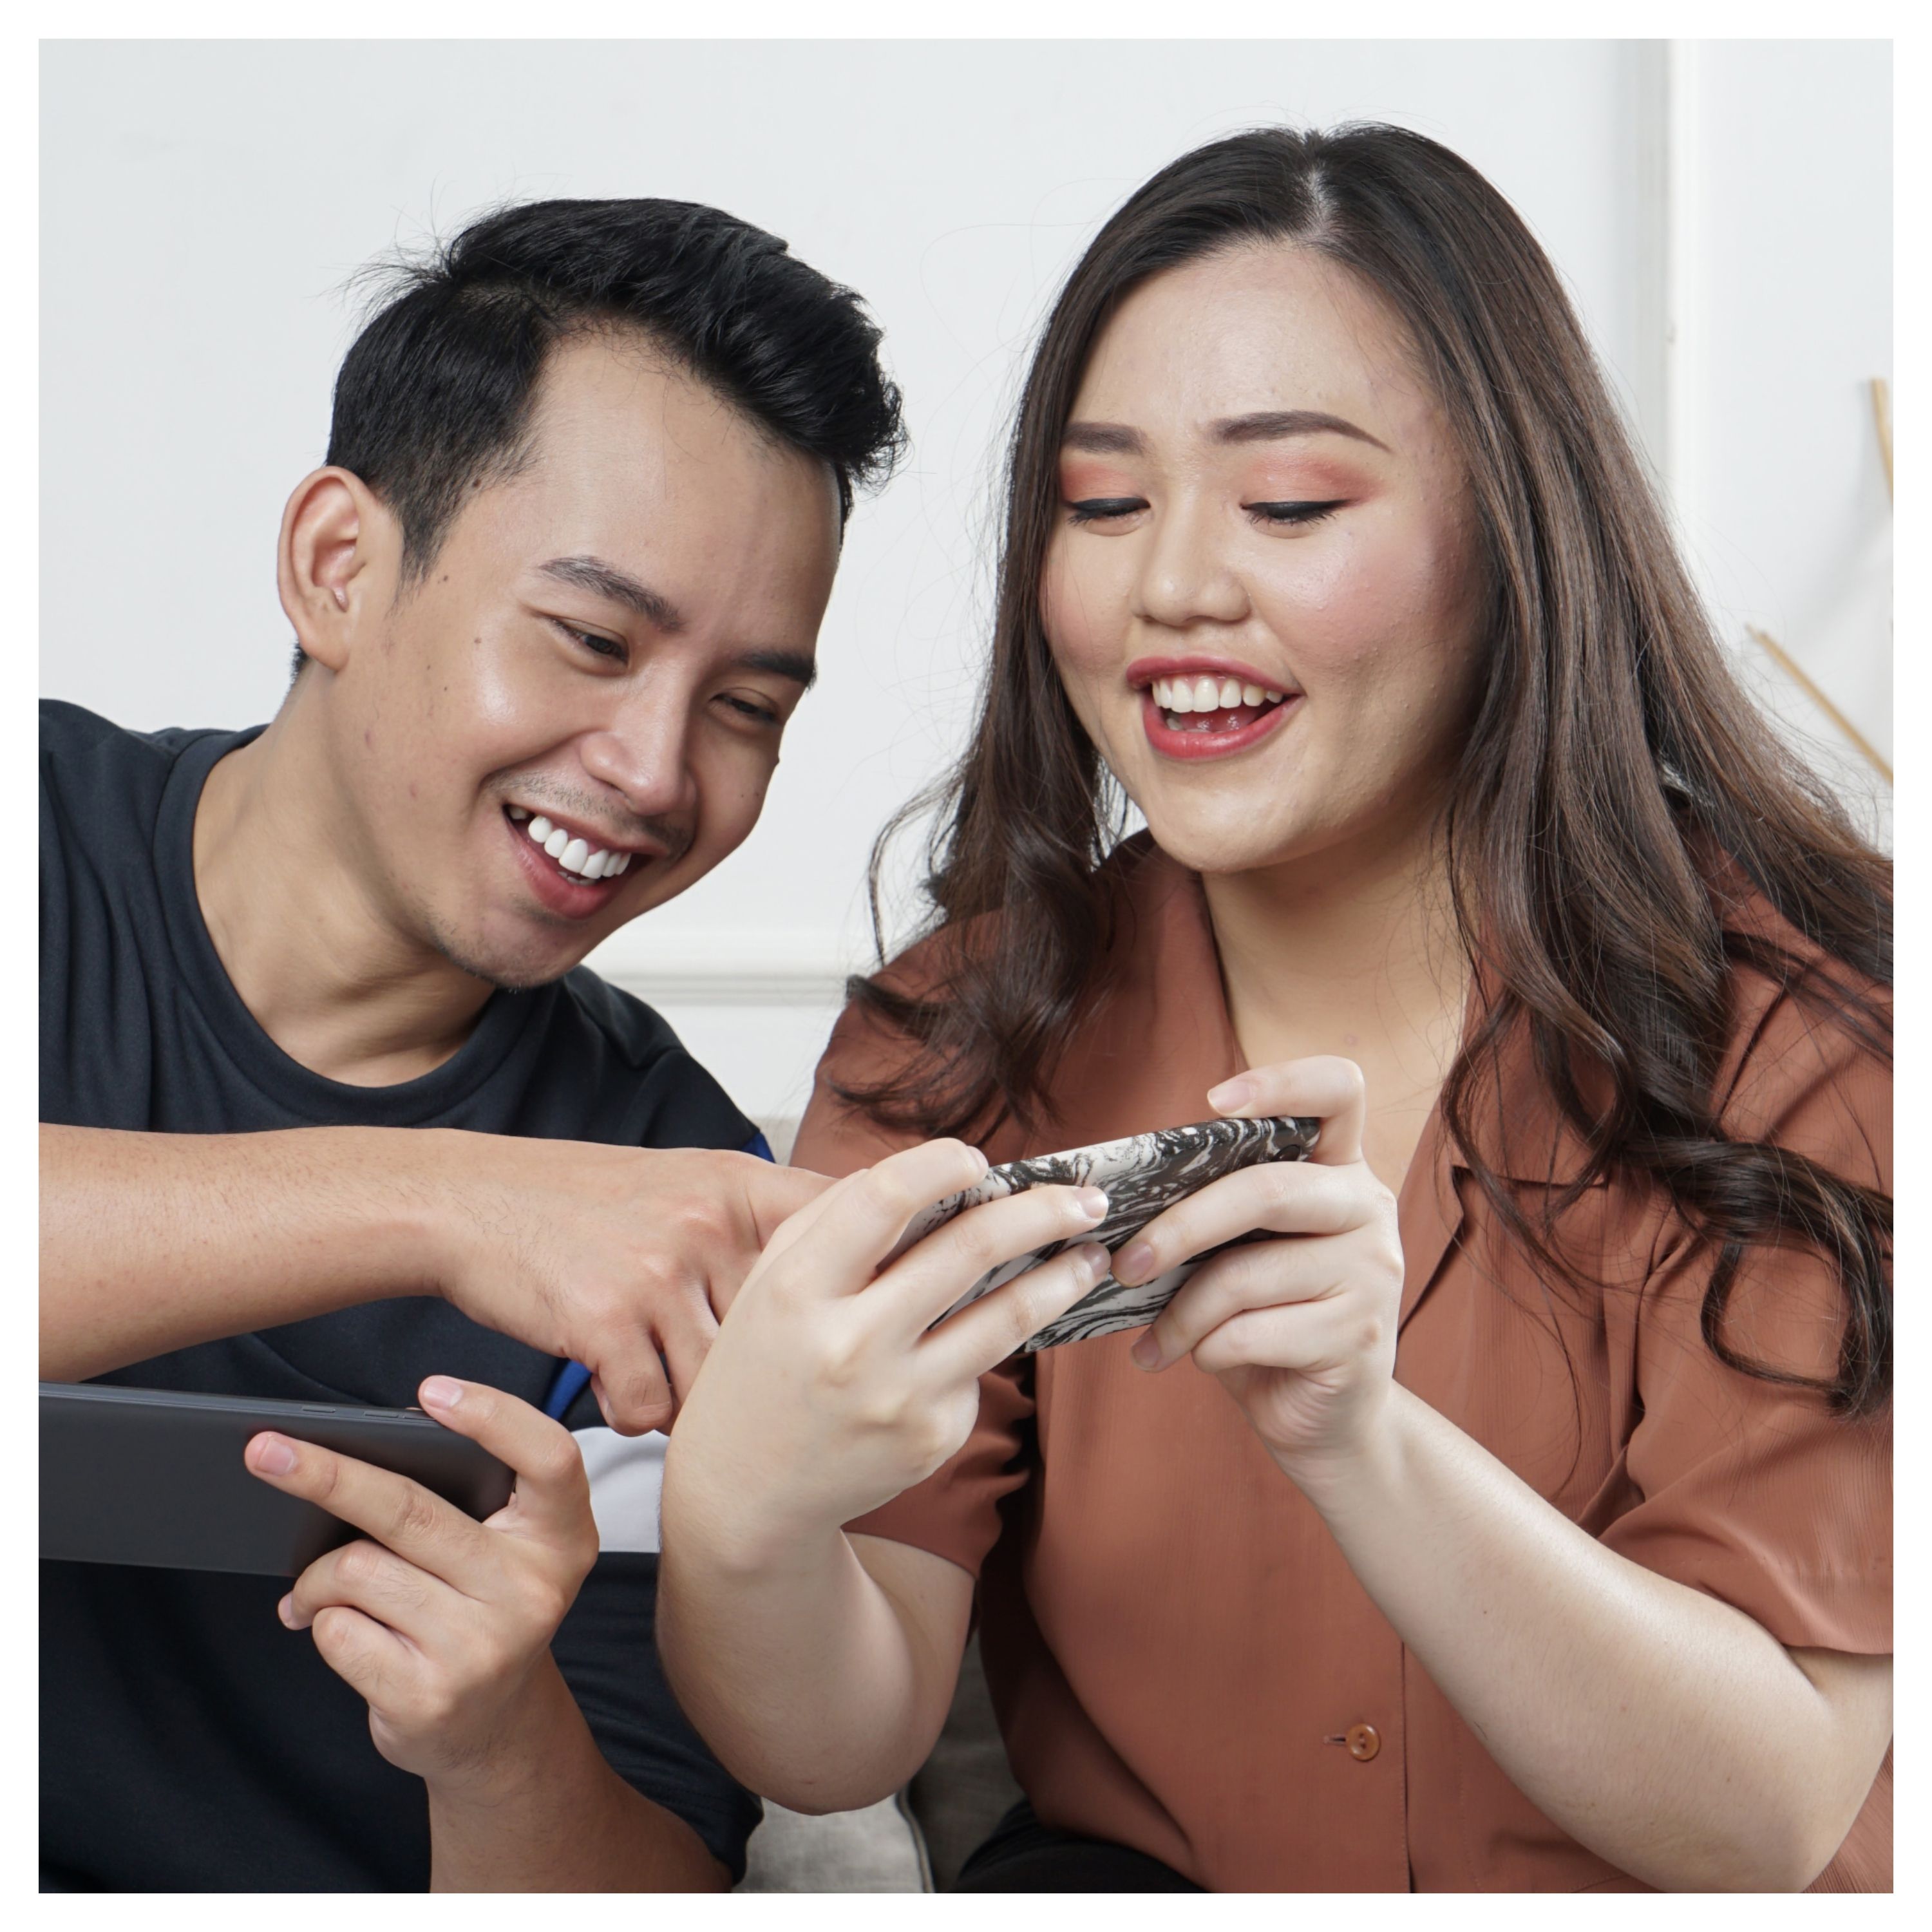 Un couple regardent un écran de téléphone portable en souriant